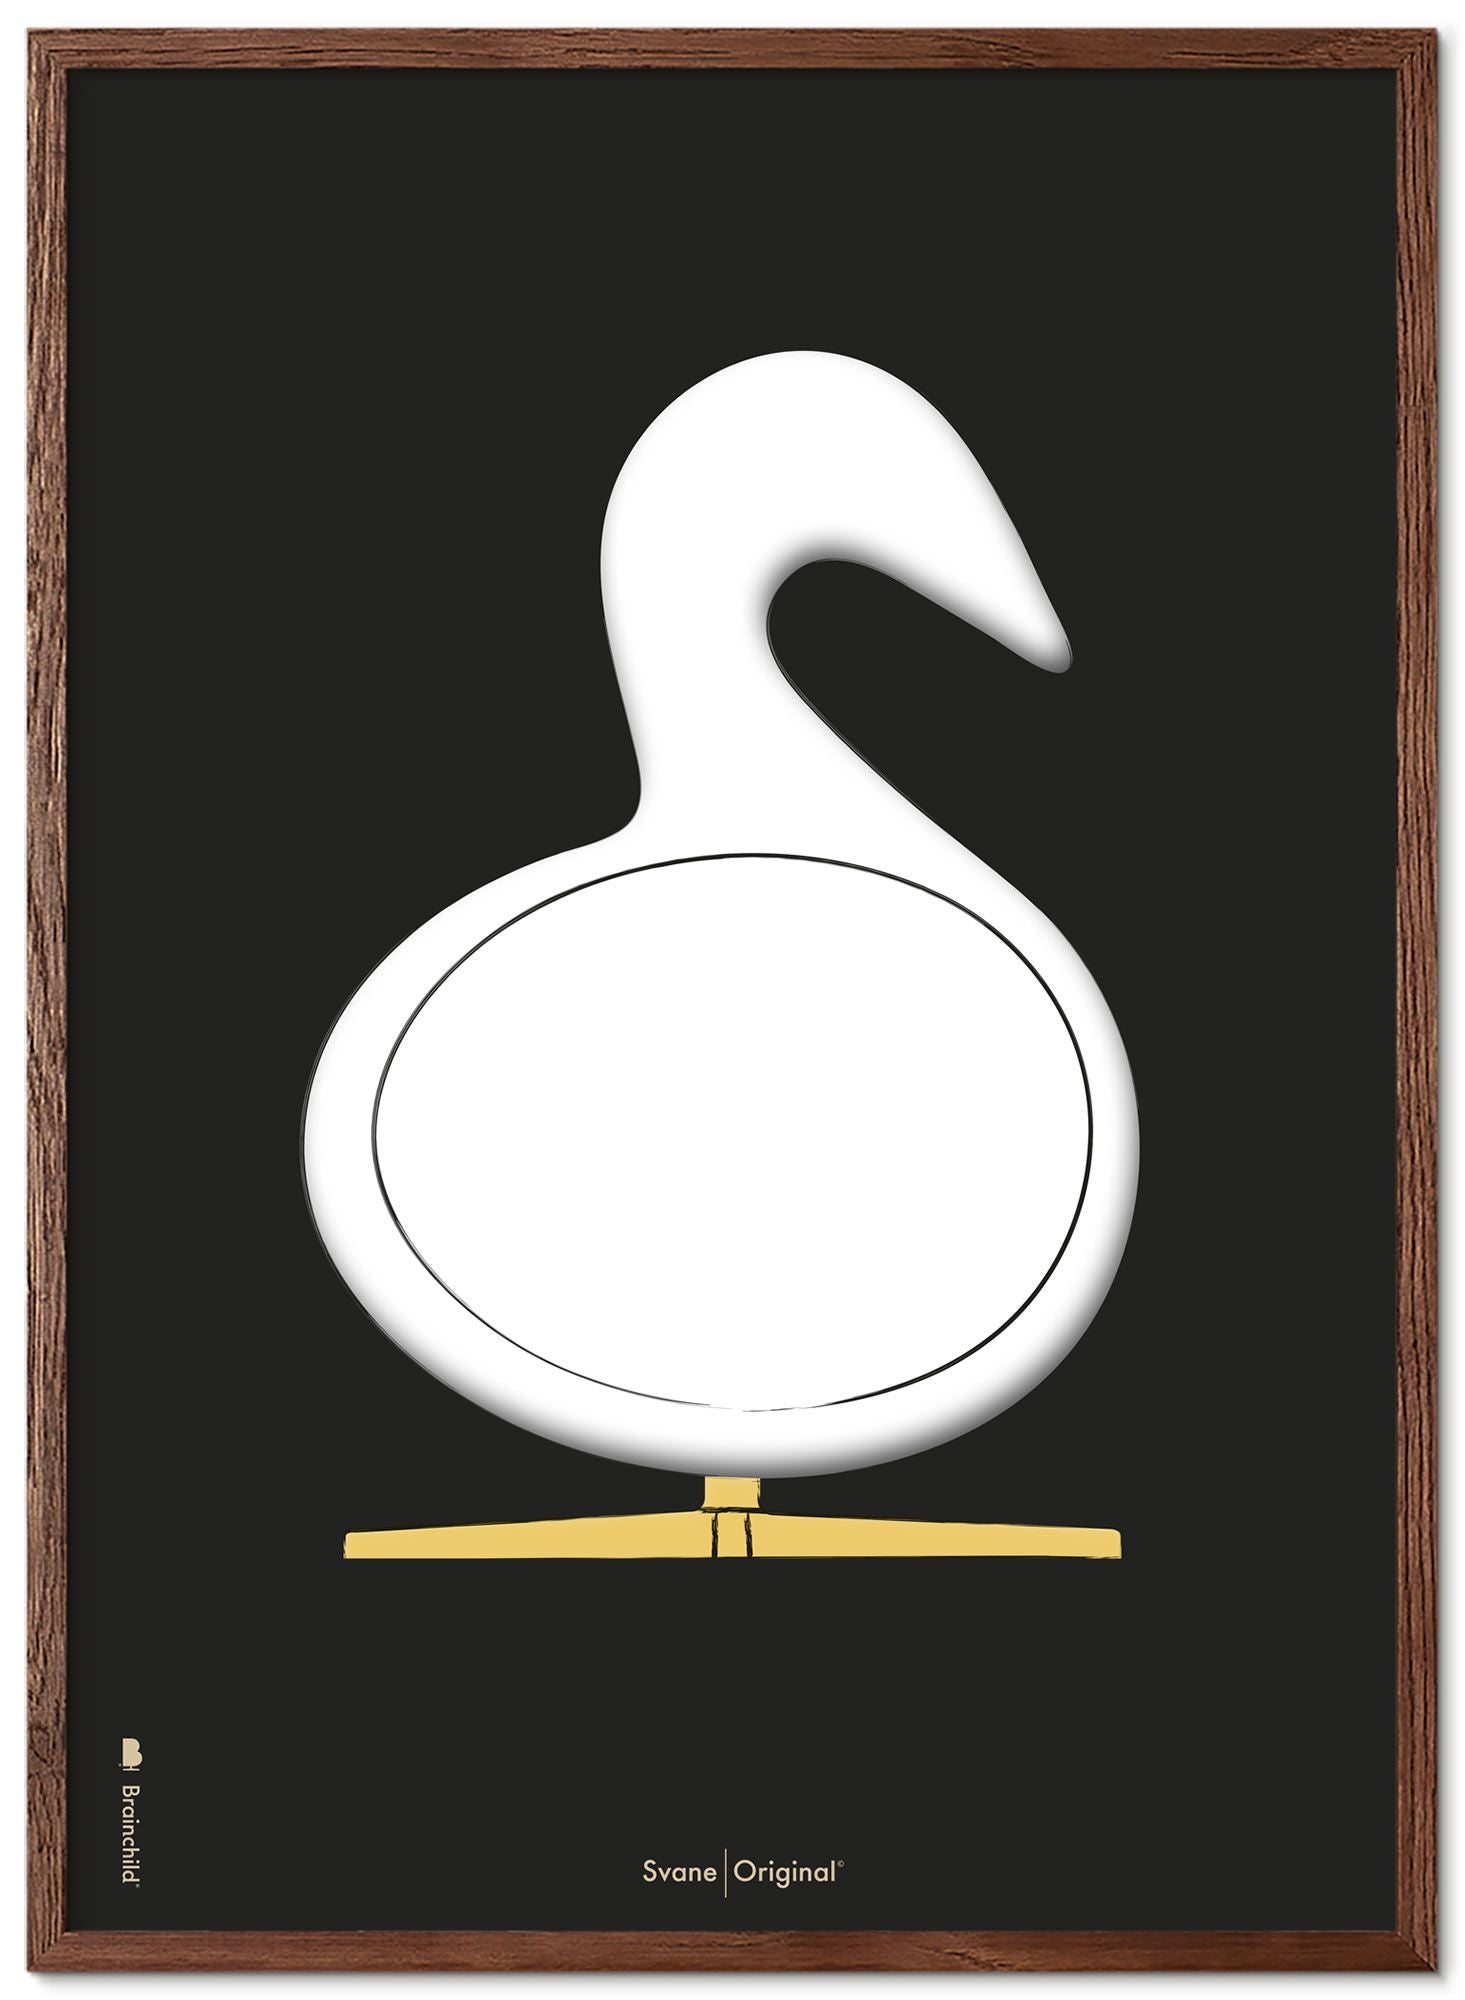 Schema poster di schizzi di disegno del cigno da gioco realizzato in legno scuro 30x40 cm, sfondo nero